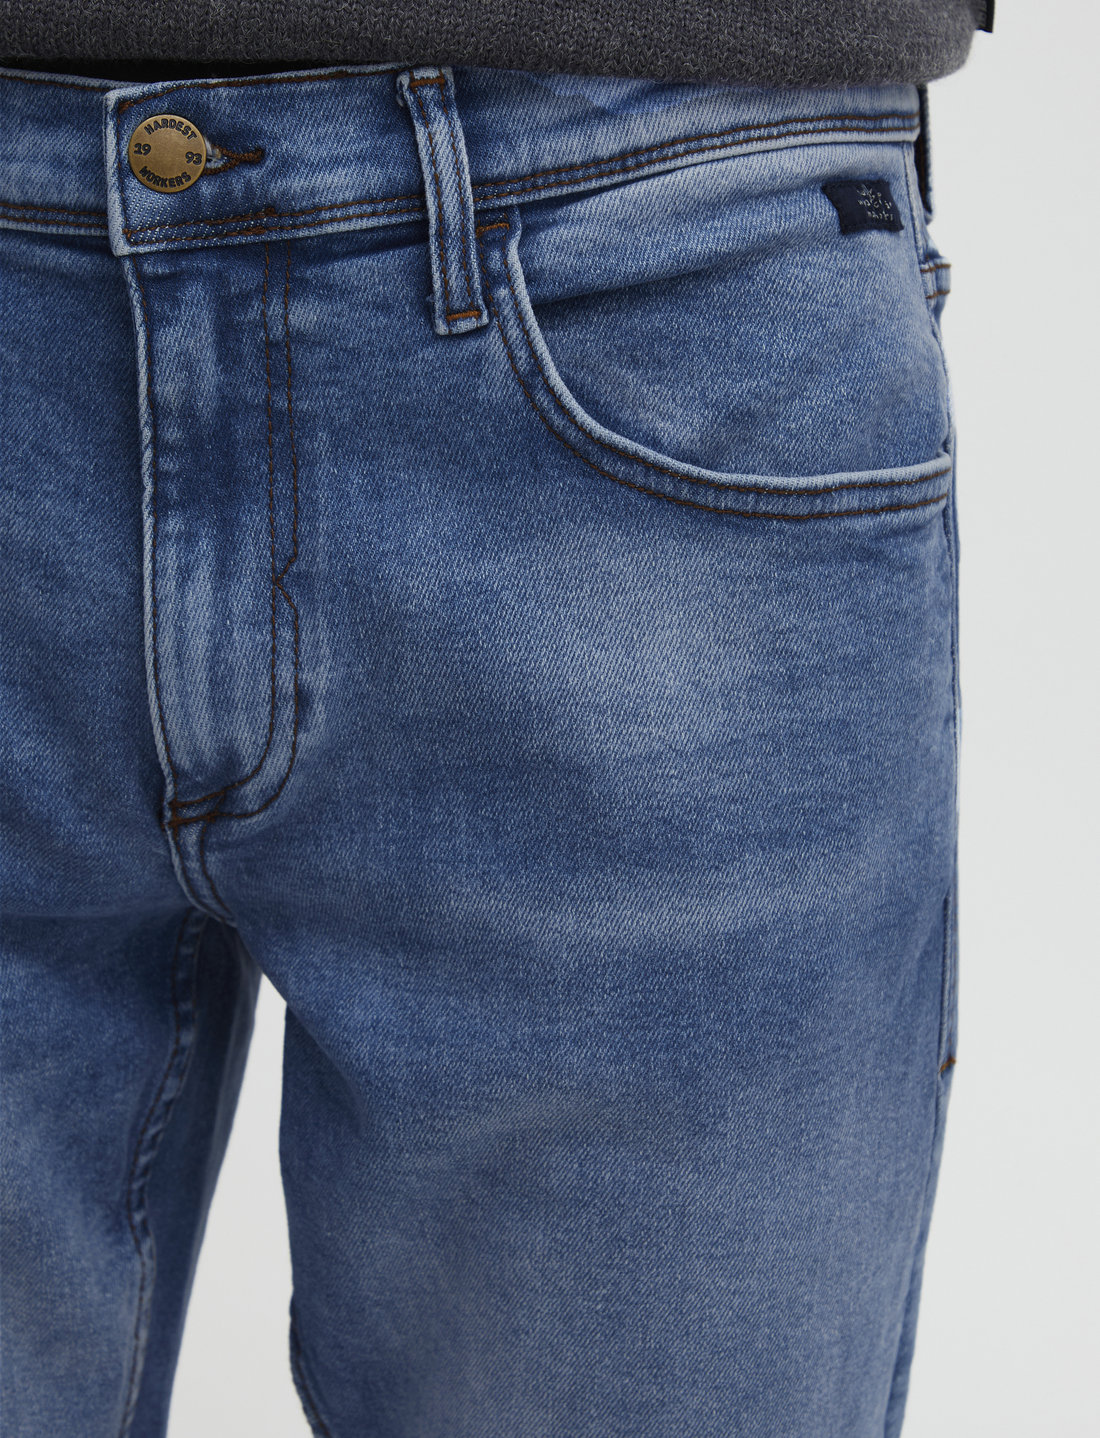 Blend Blizzard Fit Multiflex - Noos – jeans – einkaufen bei Booztlet